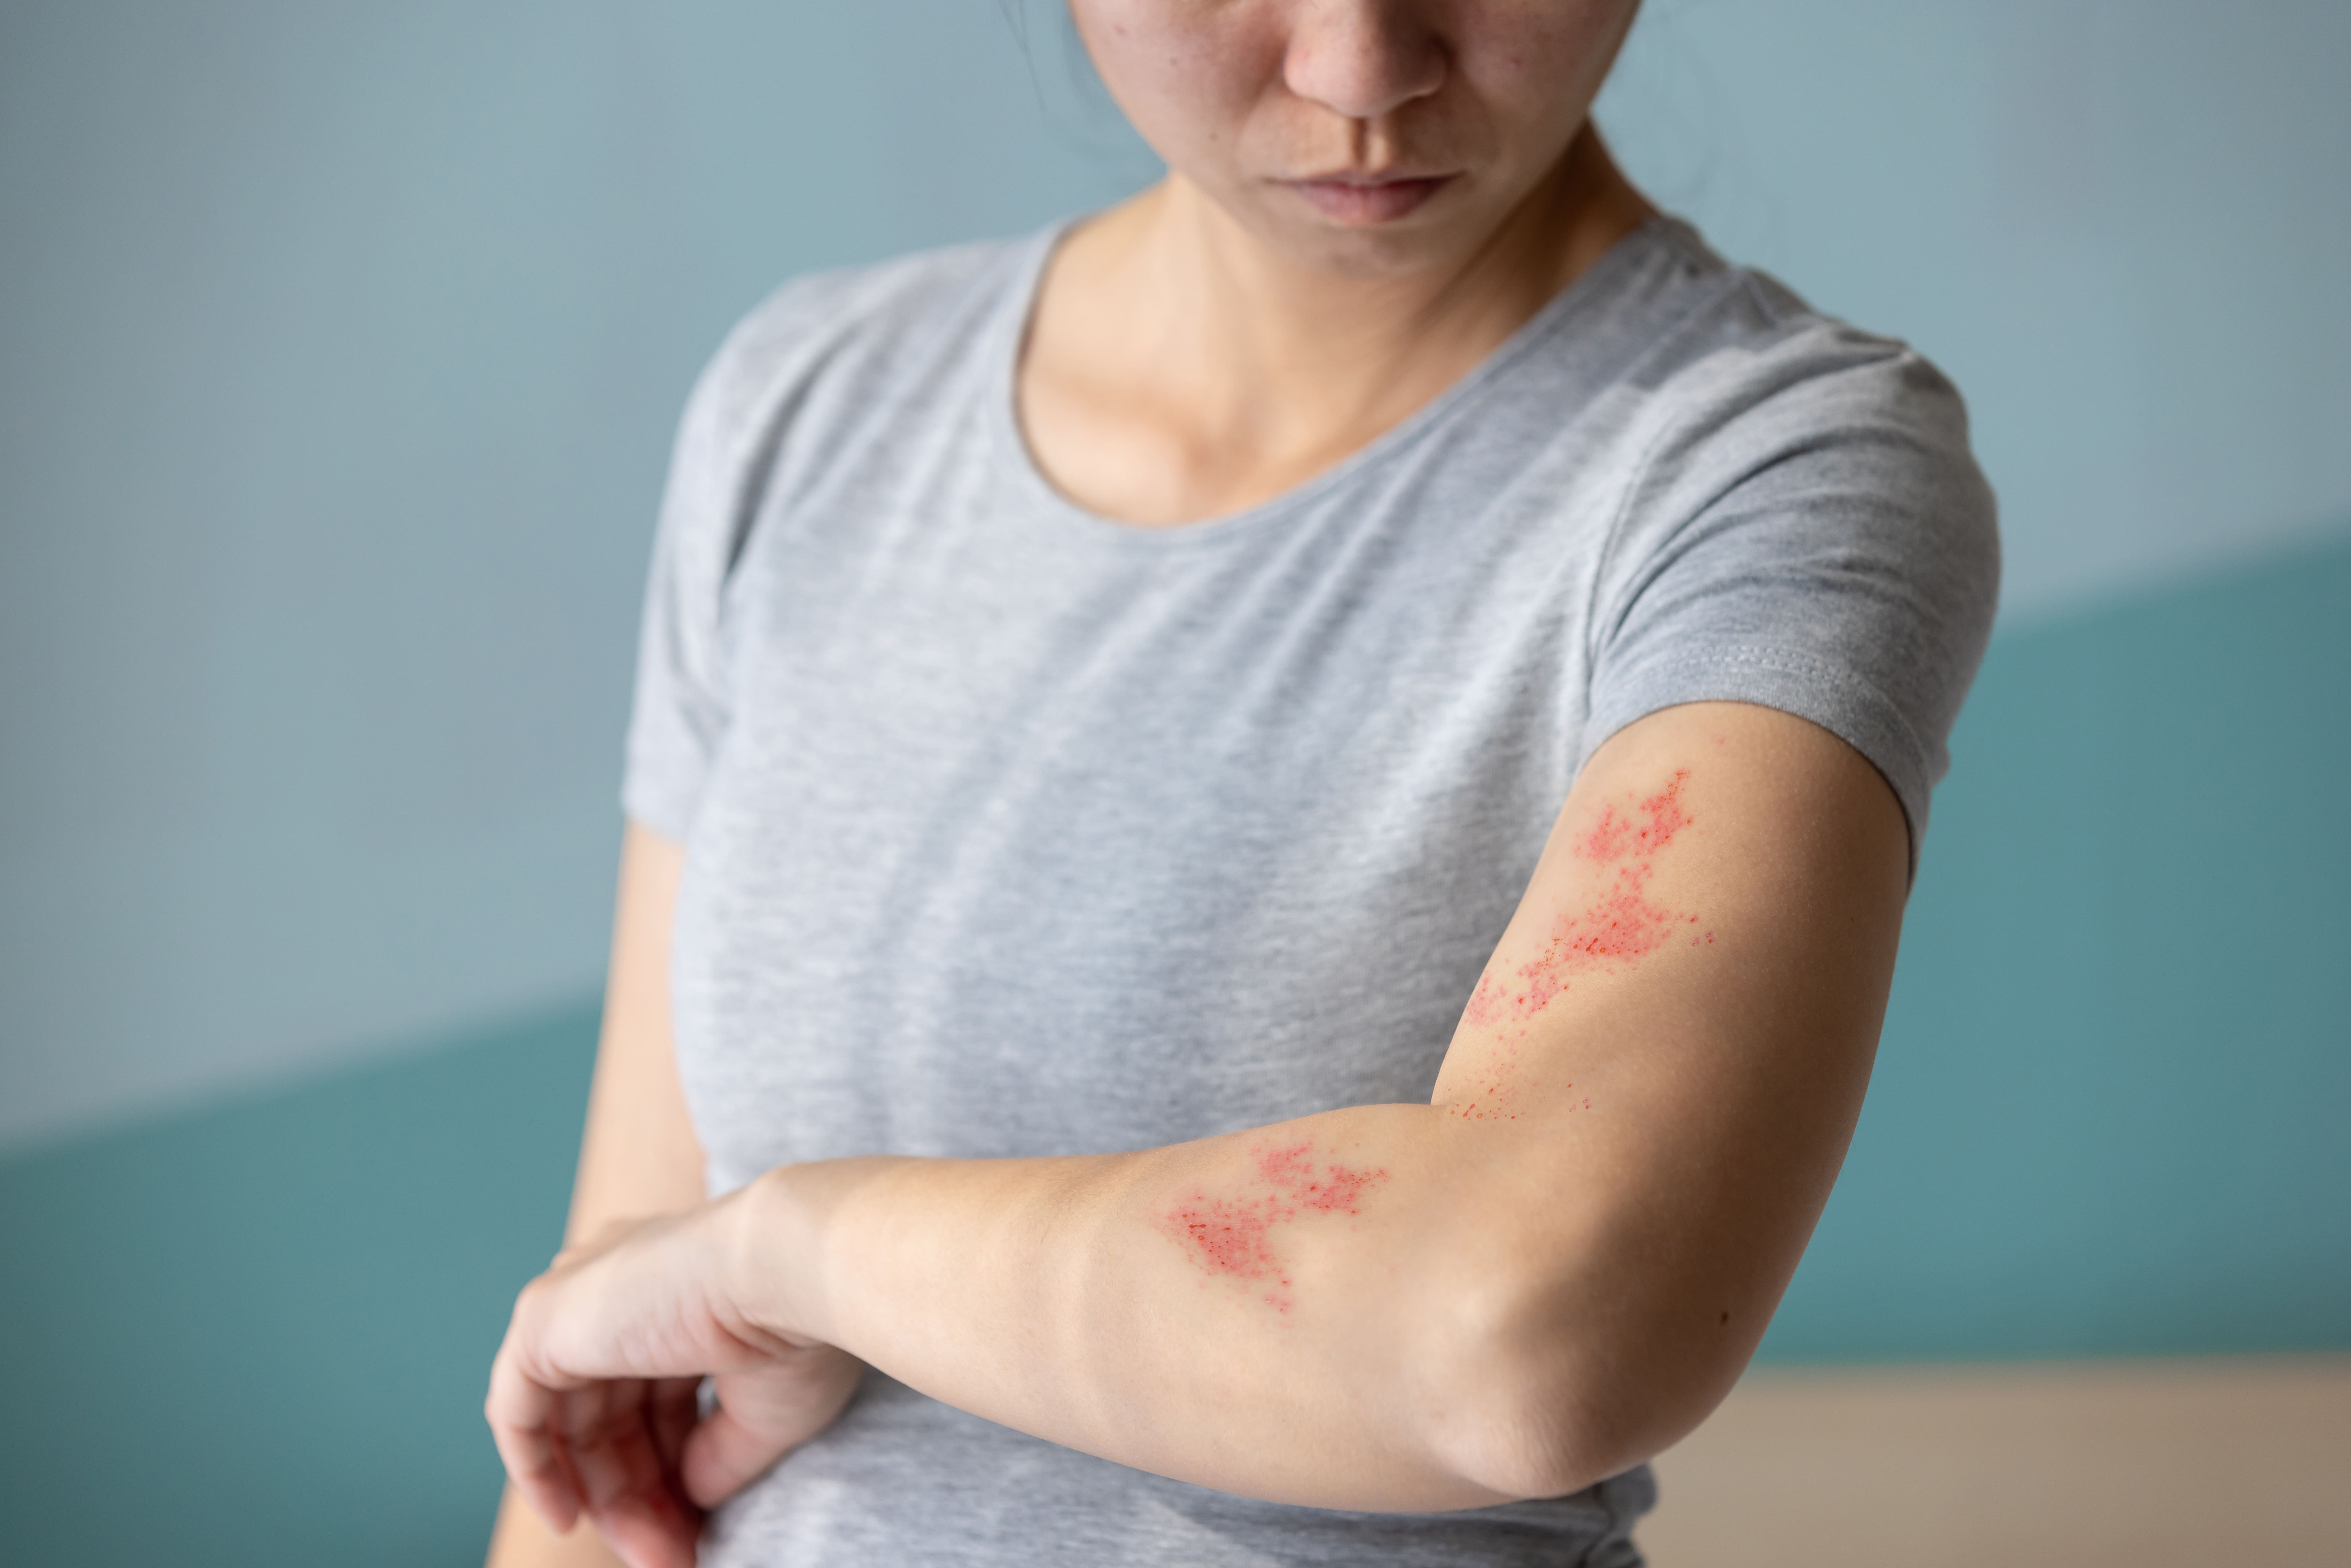 Por que o herpes zóster causa dor?